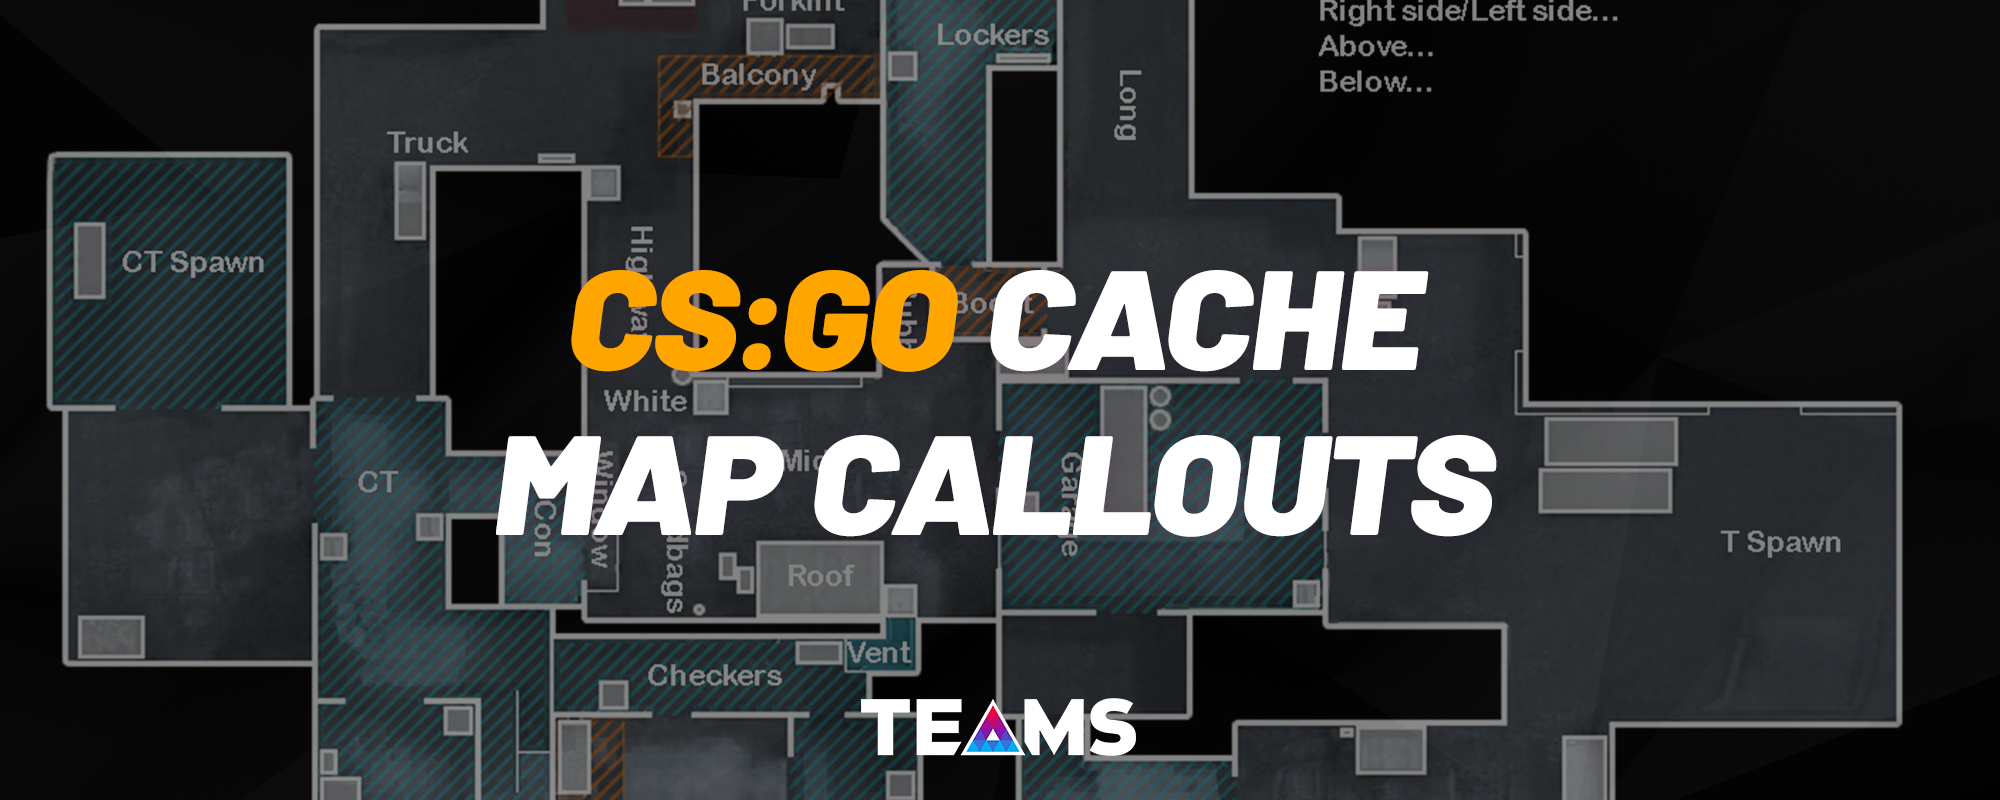 Cache Callouts for CS:GO